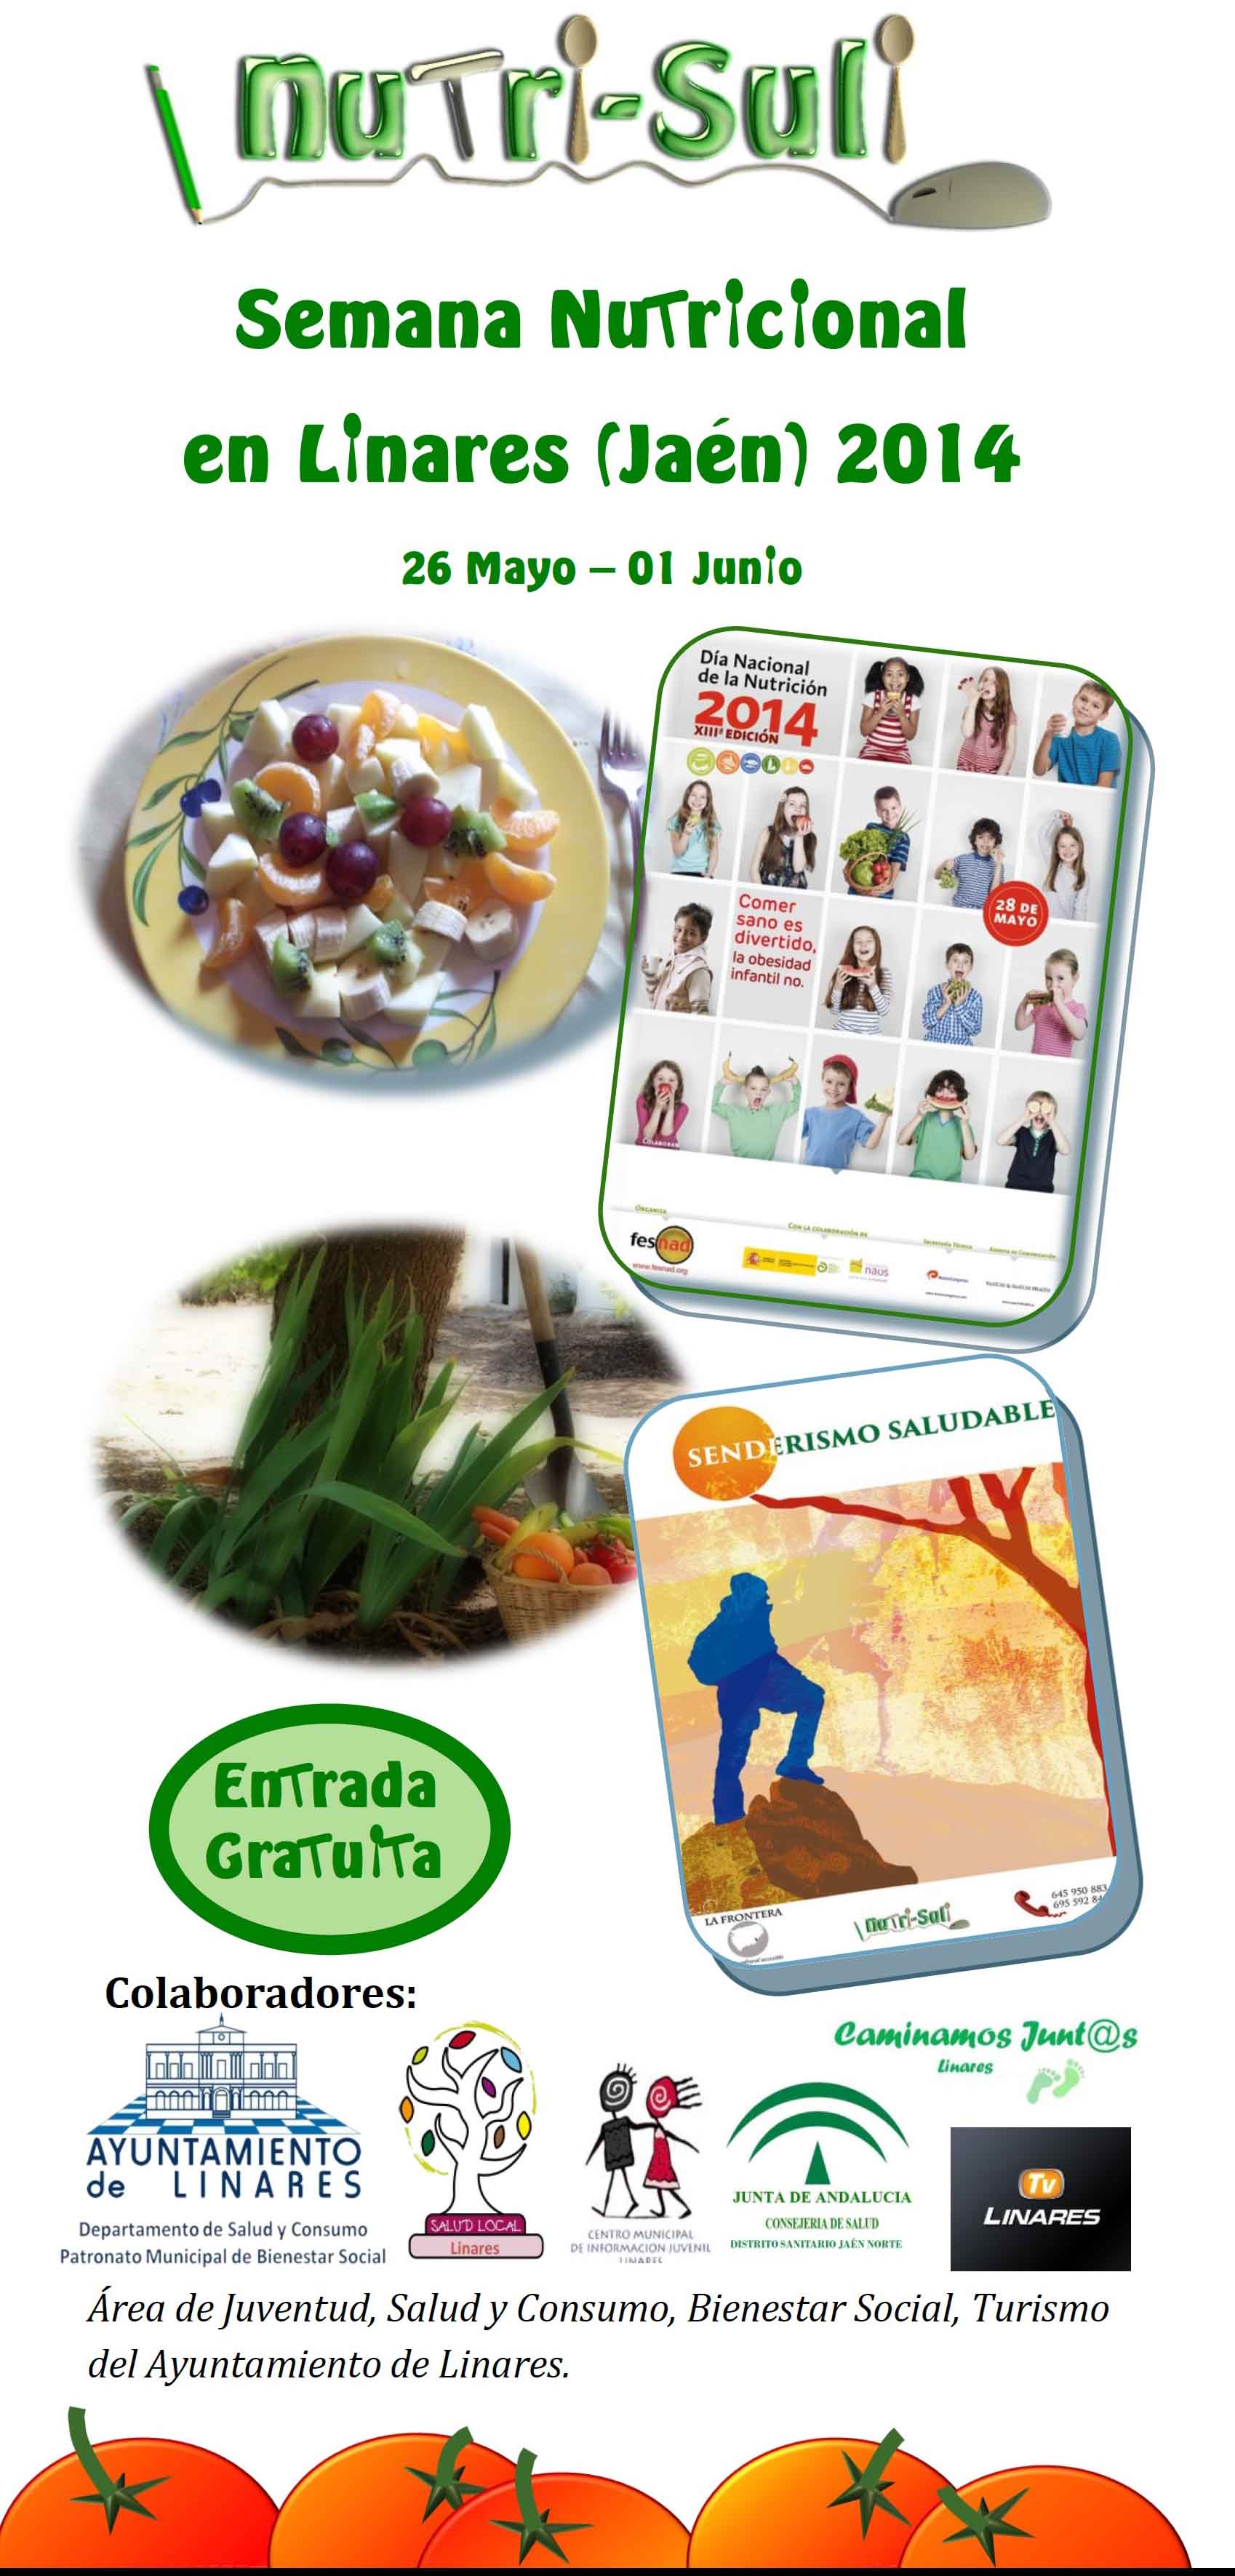 Comienza la Semana Nutricional de Linares